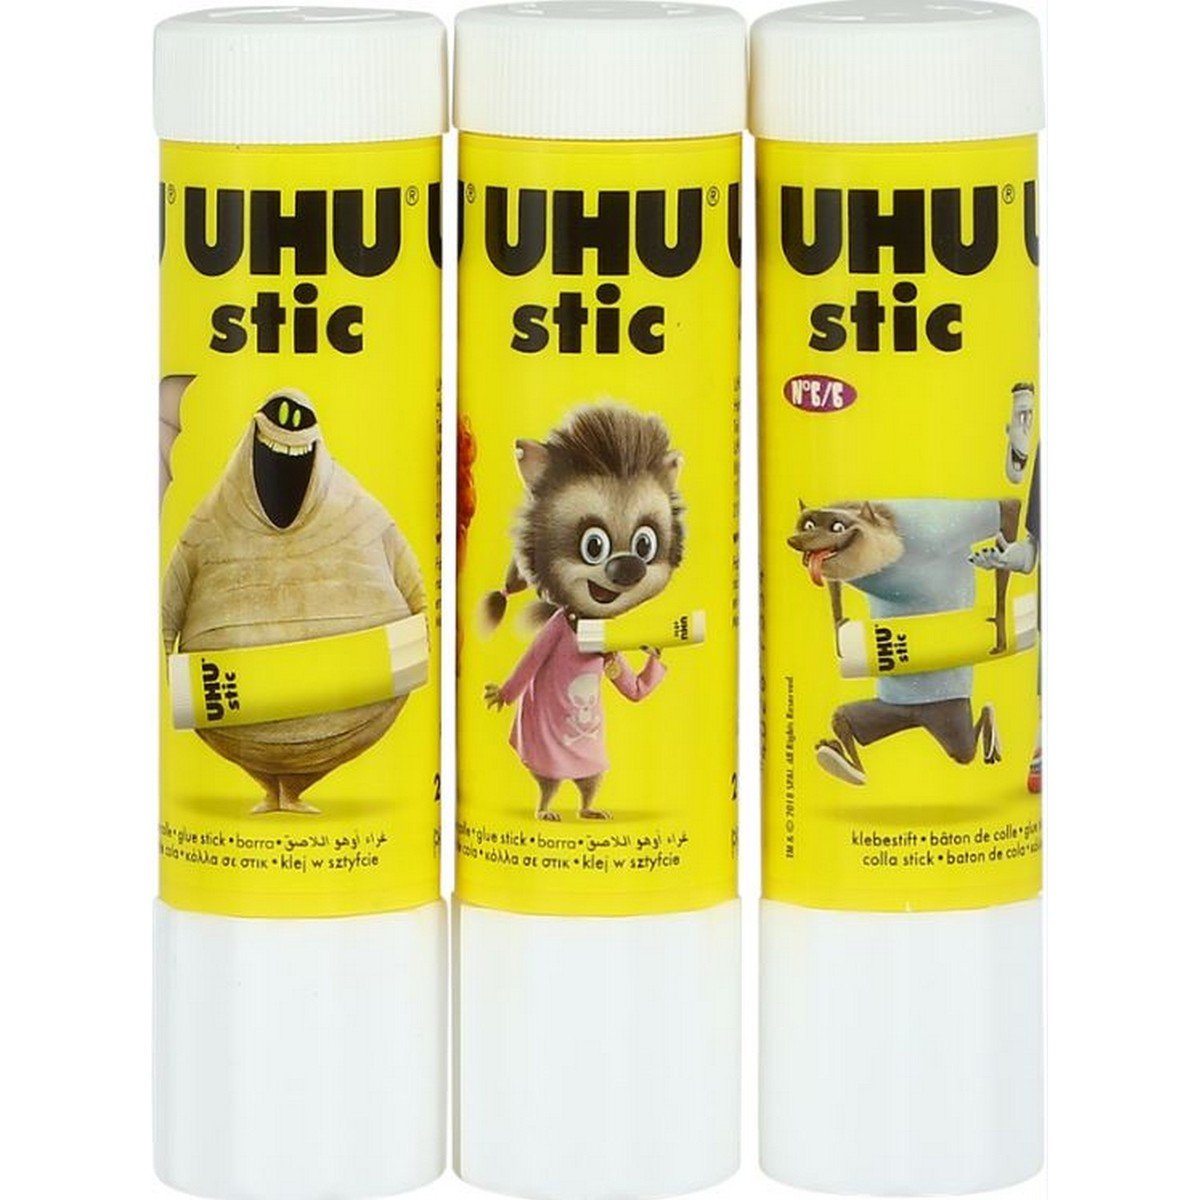 UHU Glue Stick 21gm 3pc CF-213